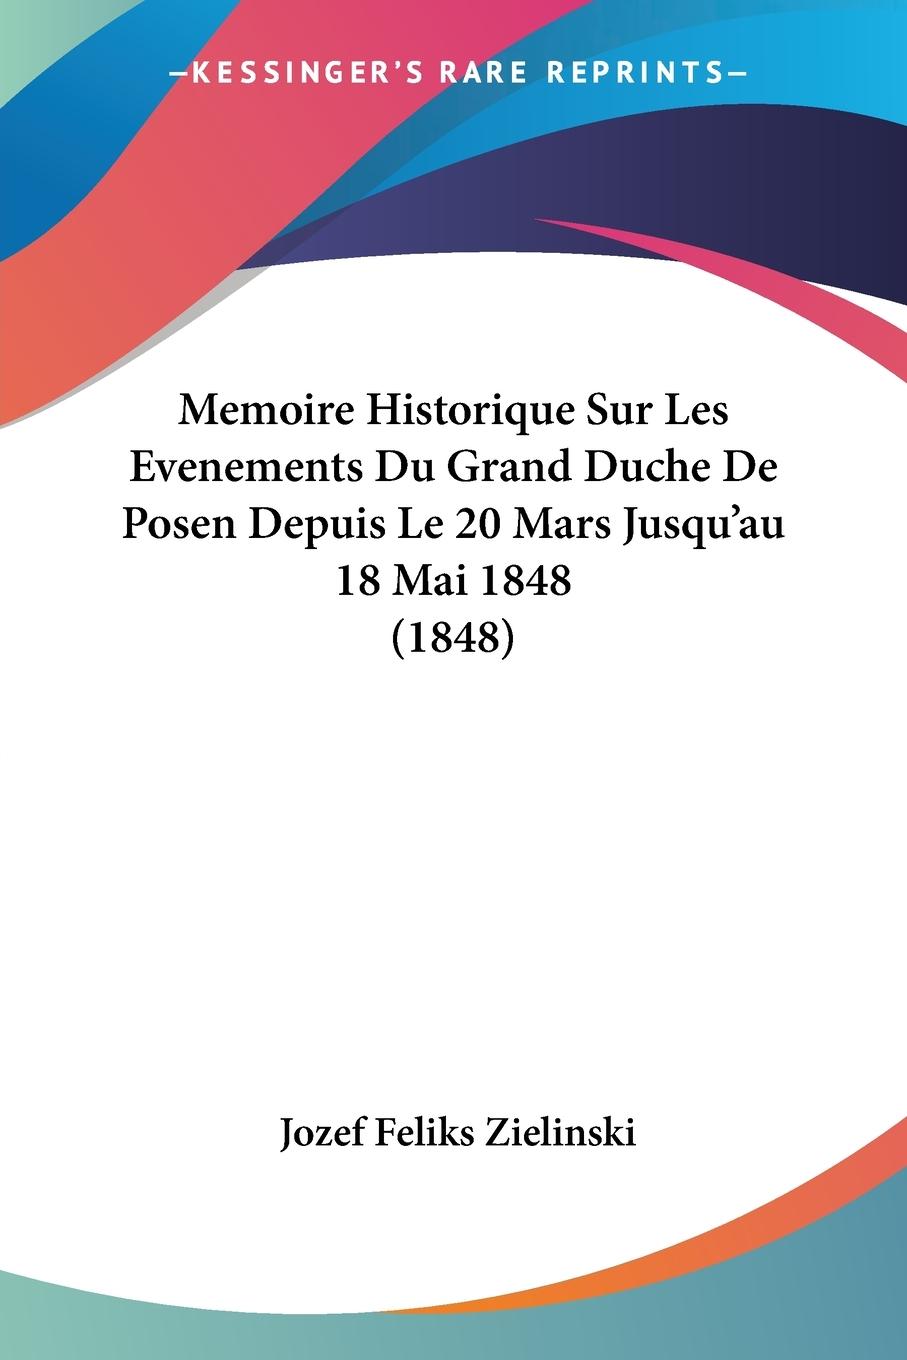 Memoire Historique Sur Les Evenements Du Grand Duche De Posen Depuis Le 20 Mars Jusqu au 18 Mai 1848 (1848) - Zielinski, Jozef Feliks